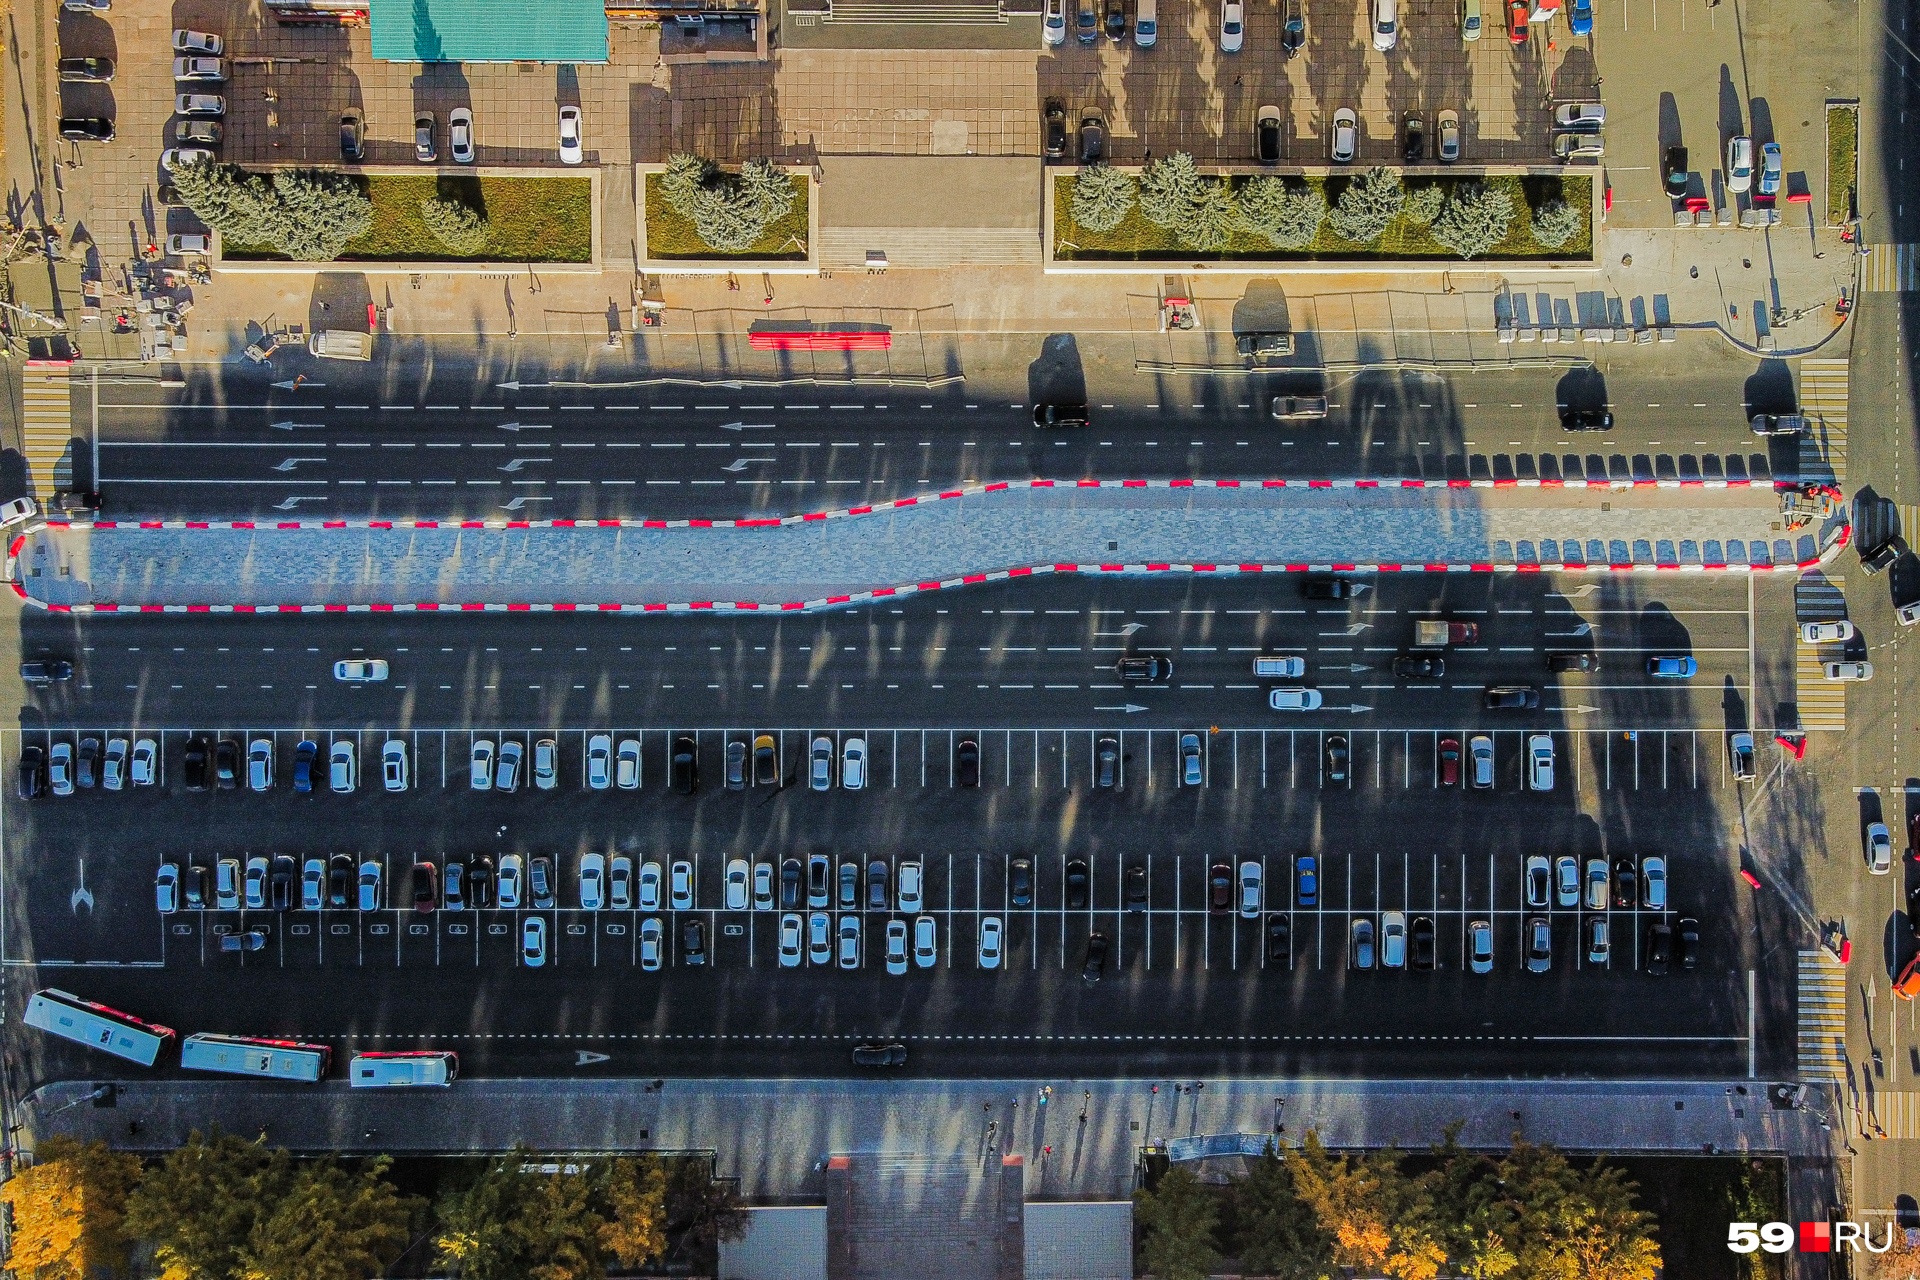 Так Октябрьская площадь сейчас выглядит сверху: красными блоками выделен будущий бульвар